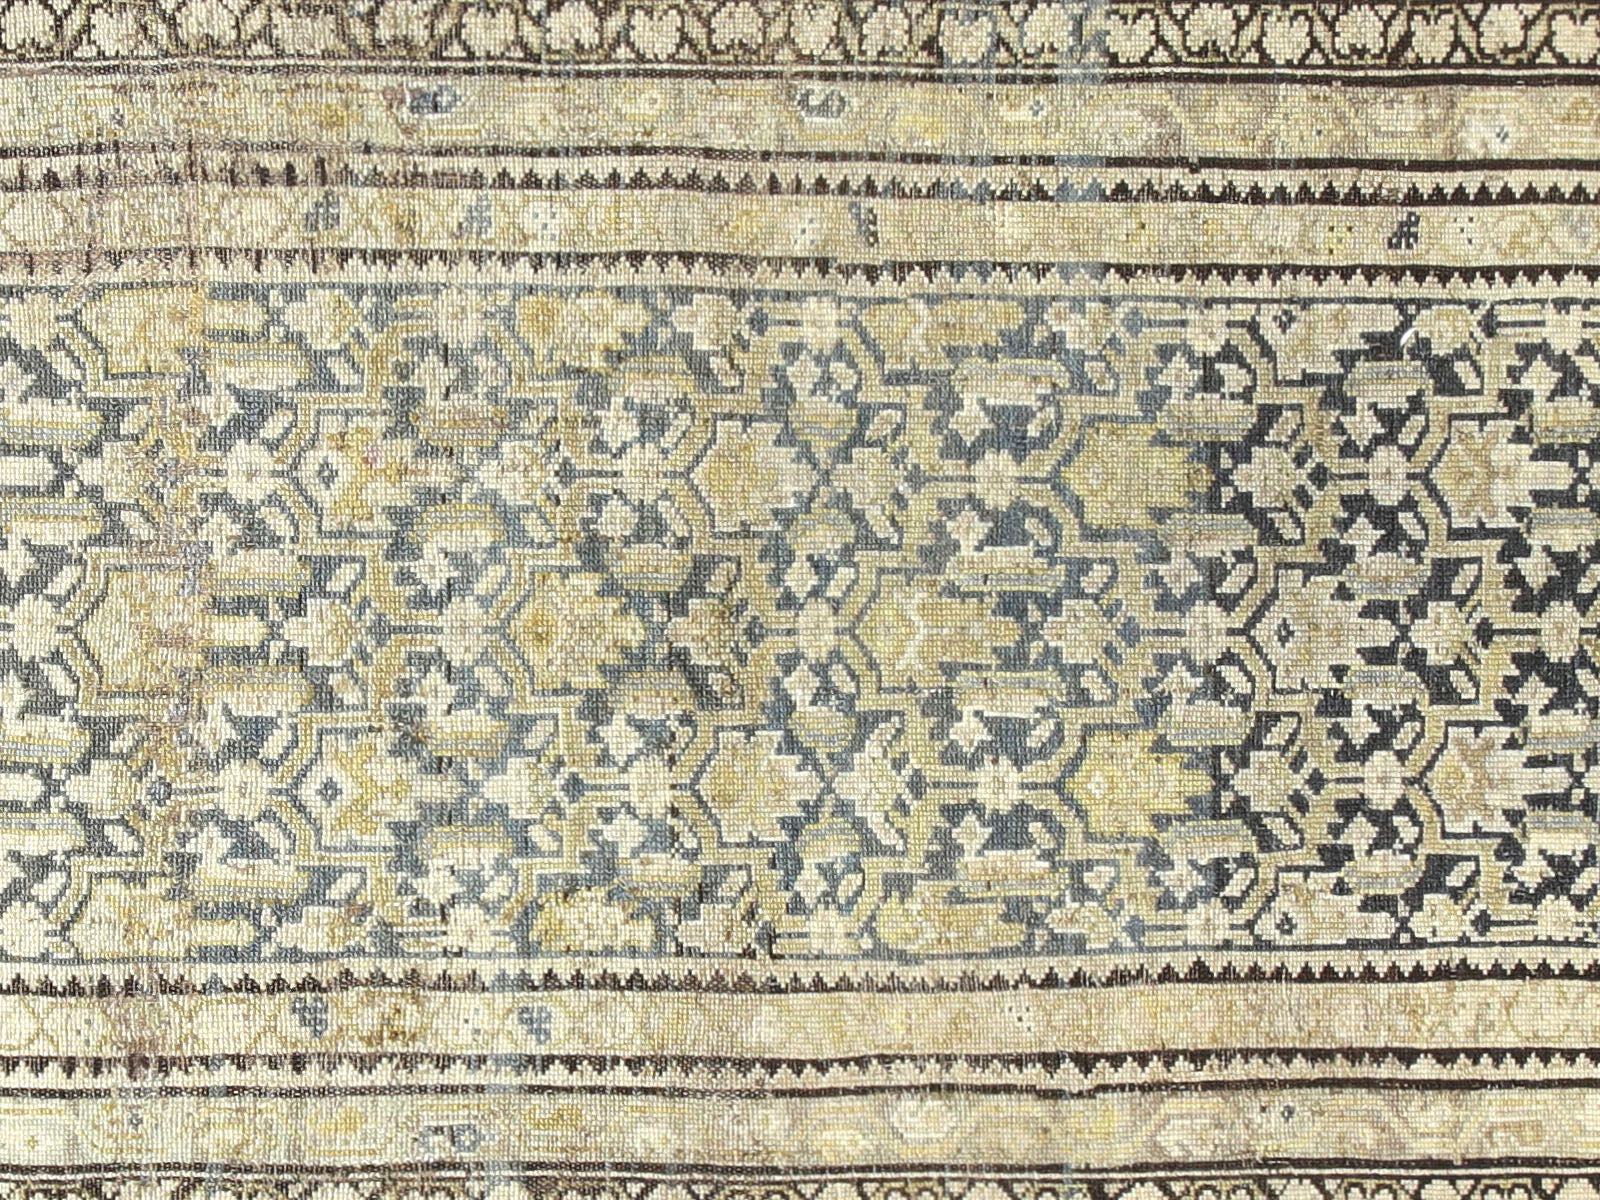 Antique Persian Melayer Runner - 2'11" x 12'4"